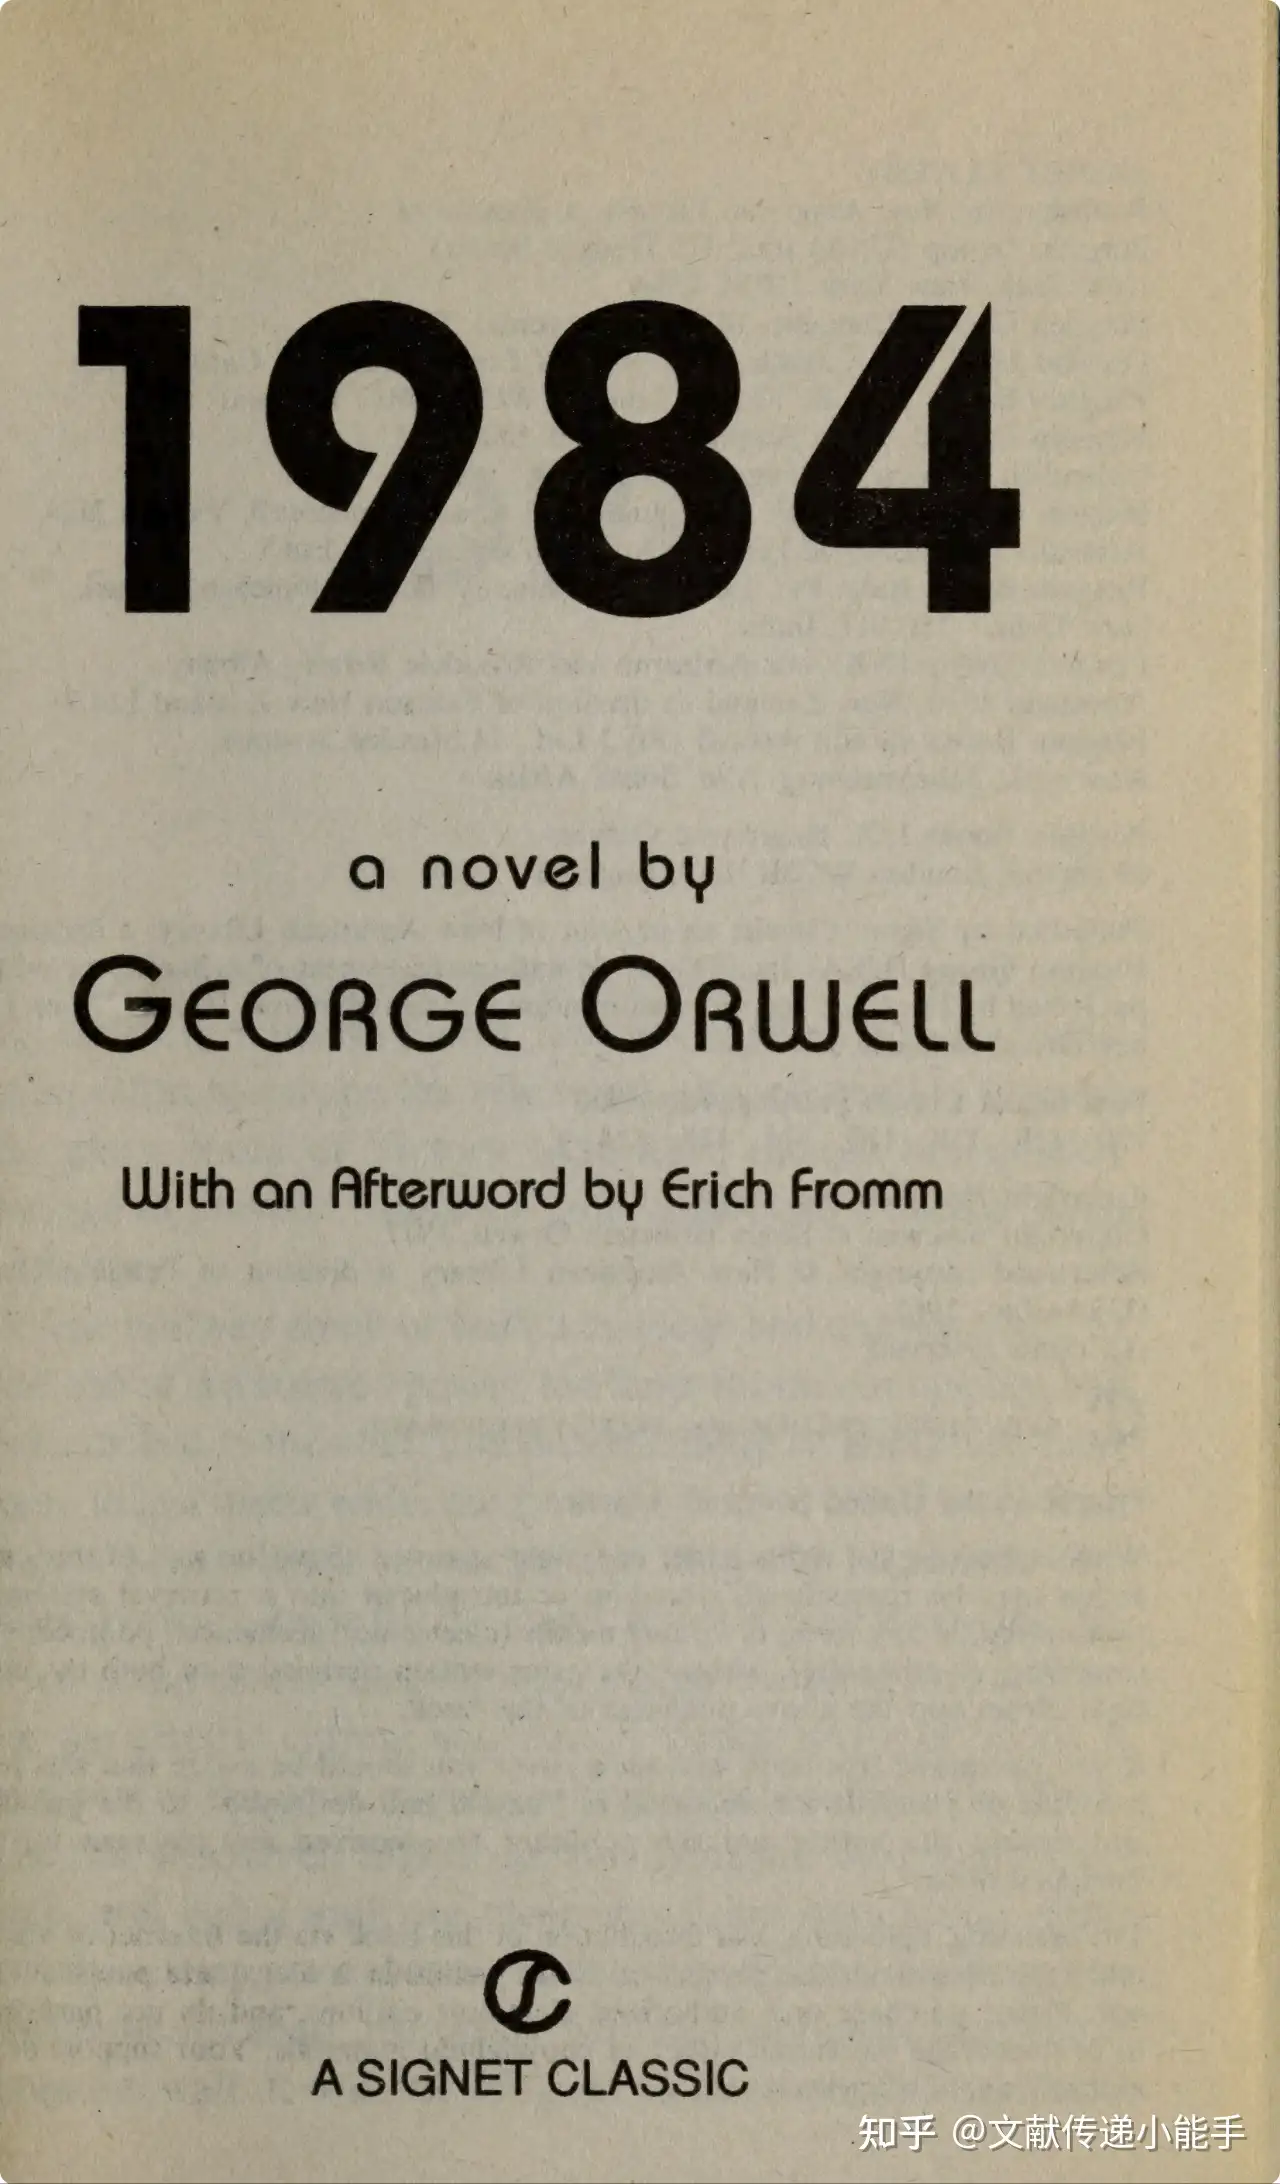 乔治·奥威尔,1984,英文版,扫描版,1984 a novel by Orwell, George 知乎